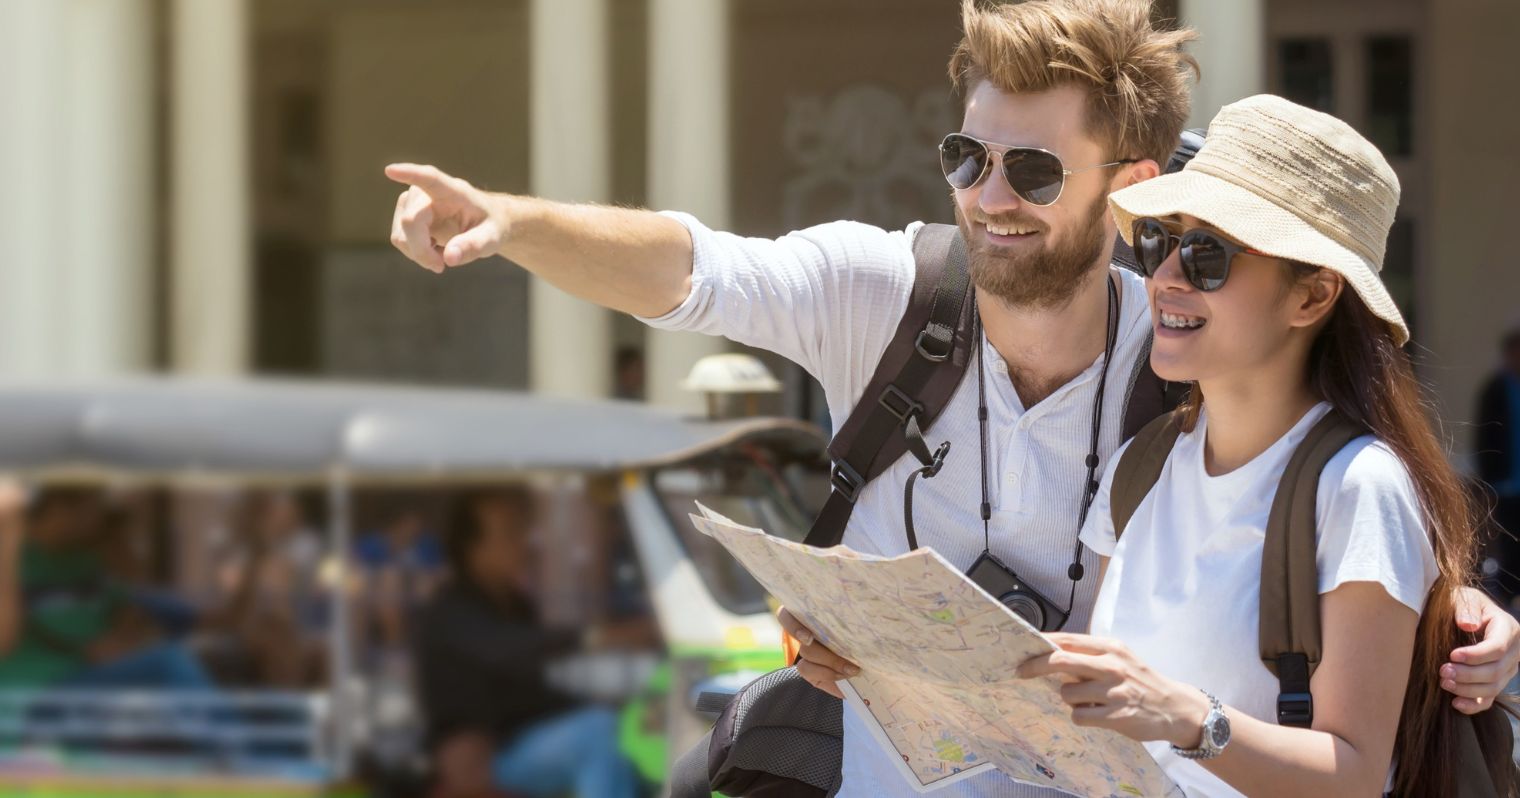 A képen egy férfi és egy női turista látható, kalapban, napszemüvegben, térképpel.